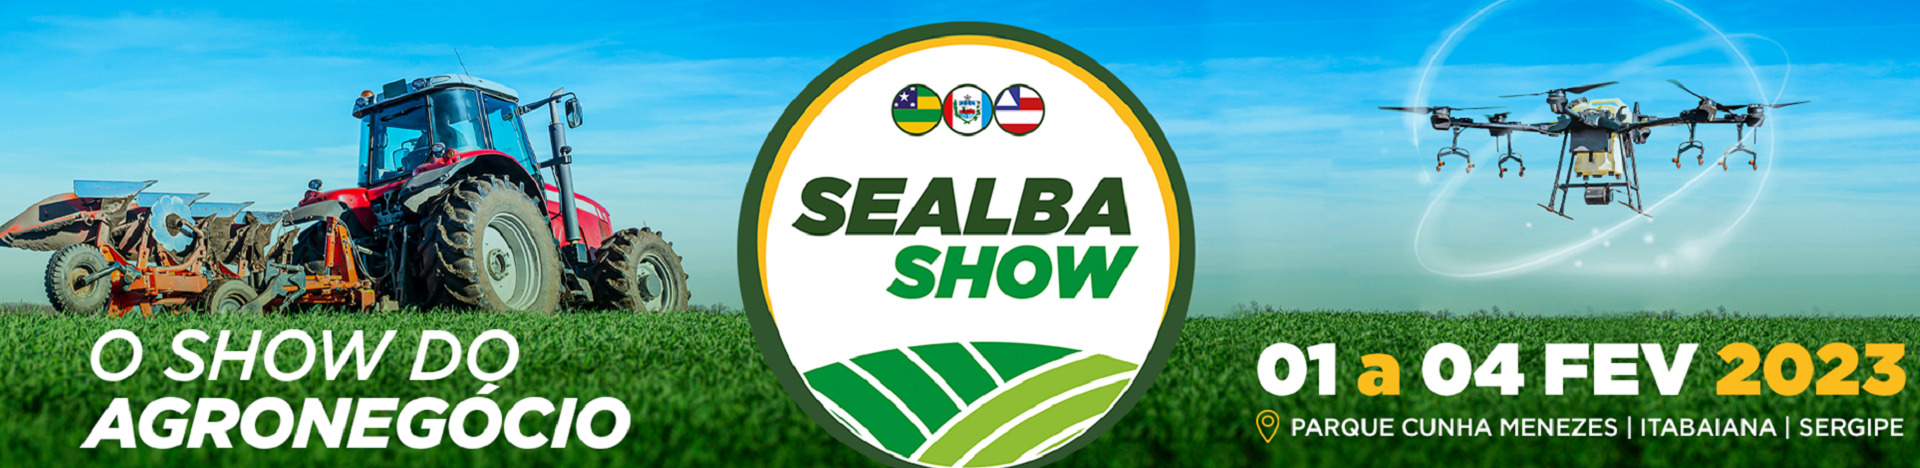 Bracell apresenta Programa de Parceria Florestal no Sealba Show